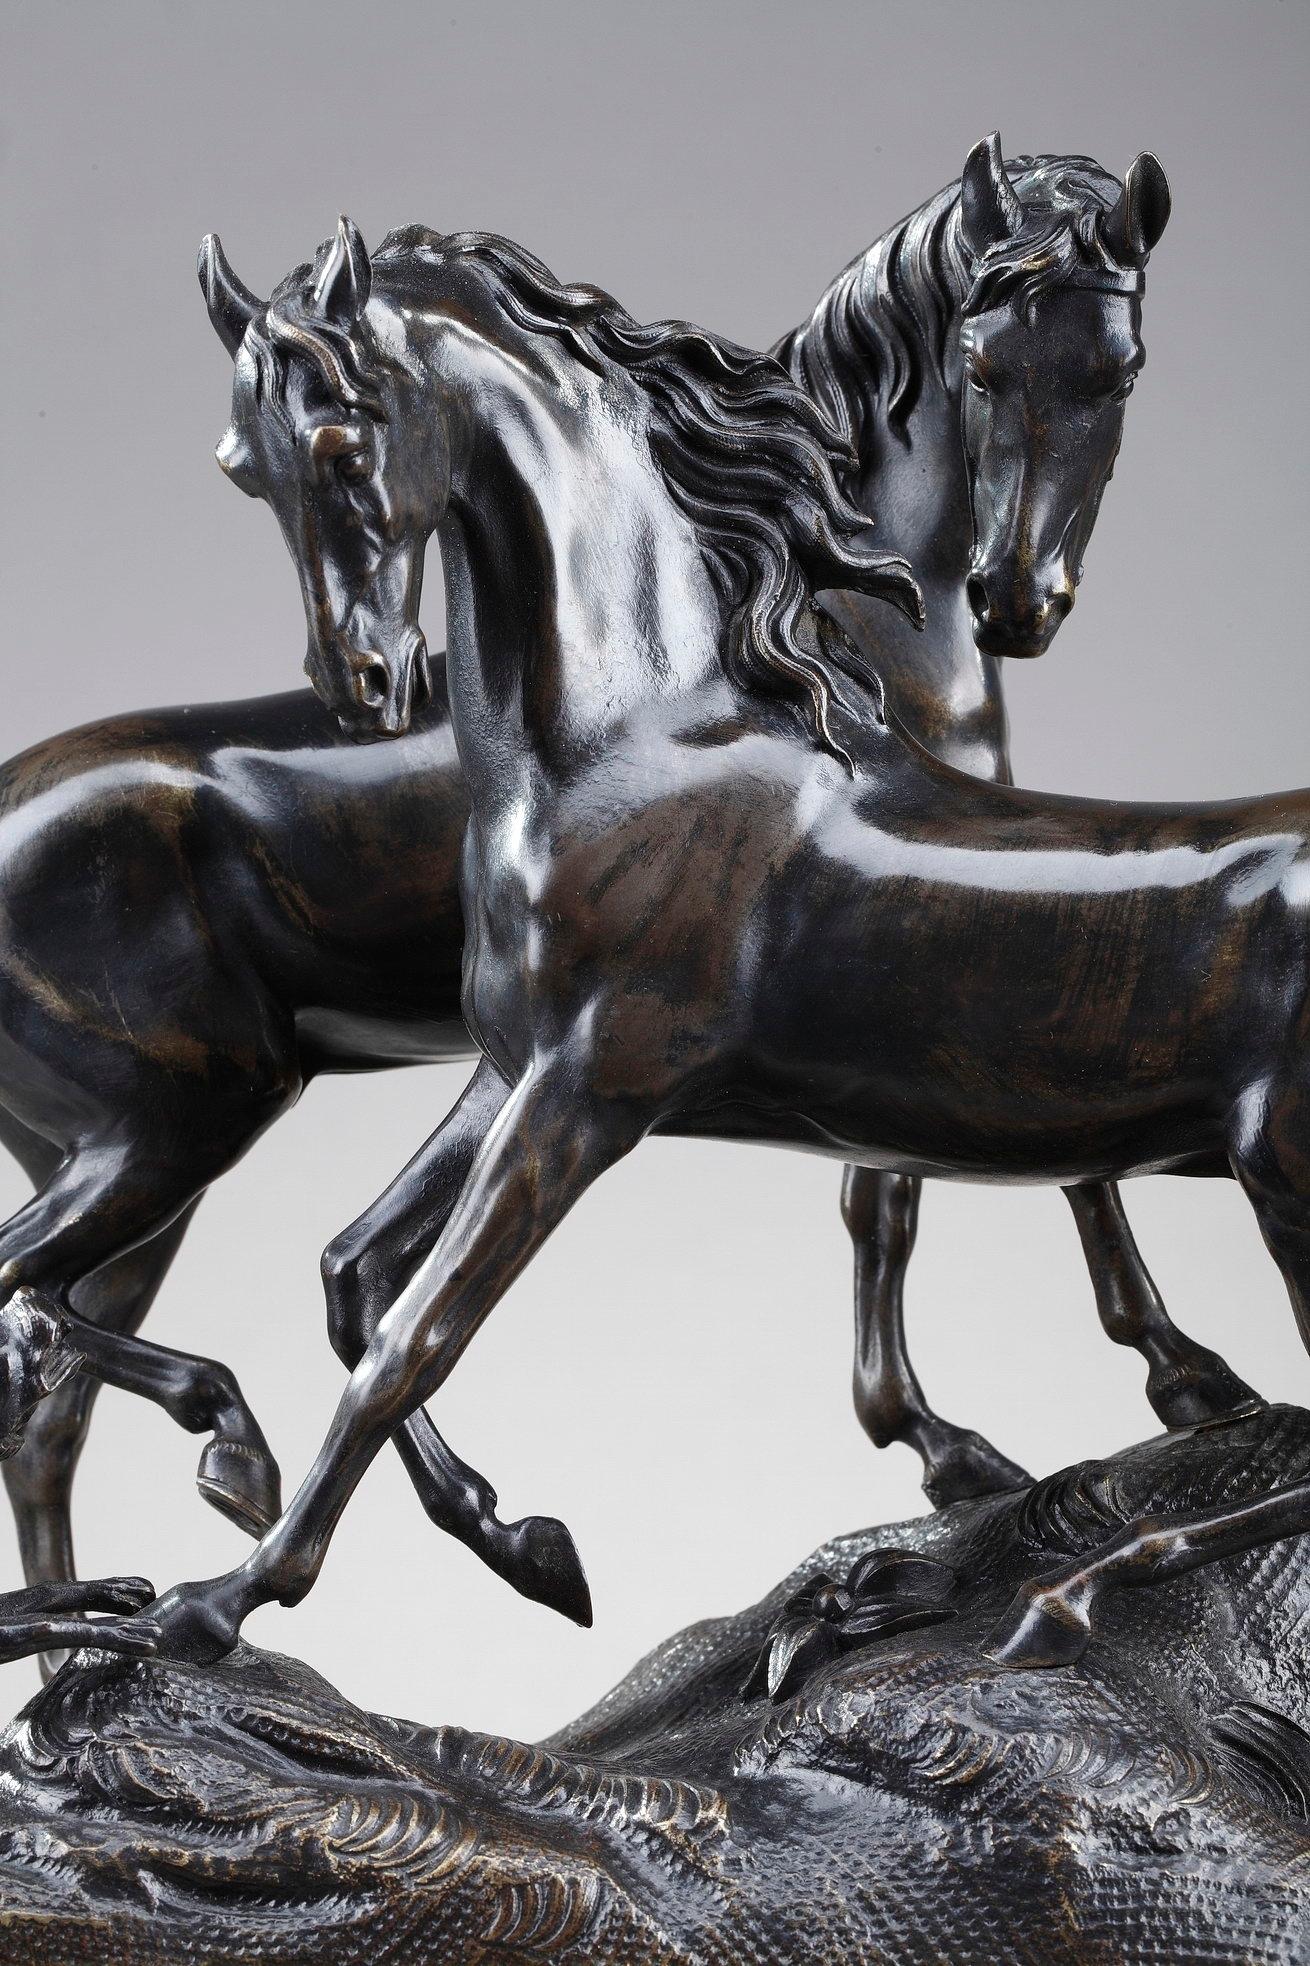 Sculpture en bronze à patine brune L'accolade représentant deux chevaux et un chien se serrant l'un contre l'autre sur un socle naturaliste rehaussé de fleurs. Le chien aboie après les chevaux. Le groupe repose sur une base cannelée en bronze doré